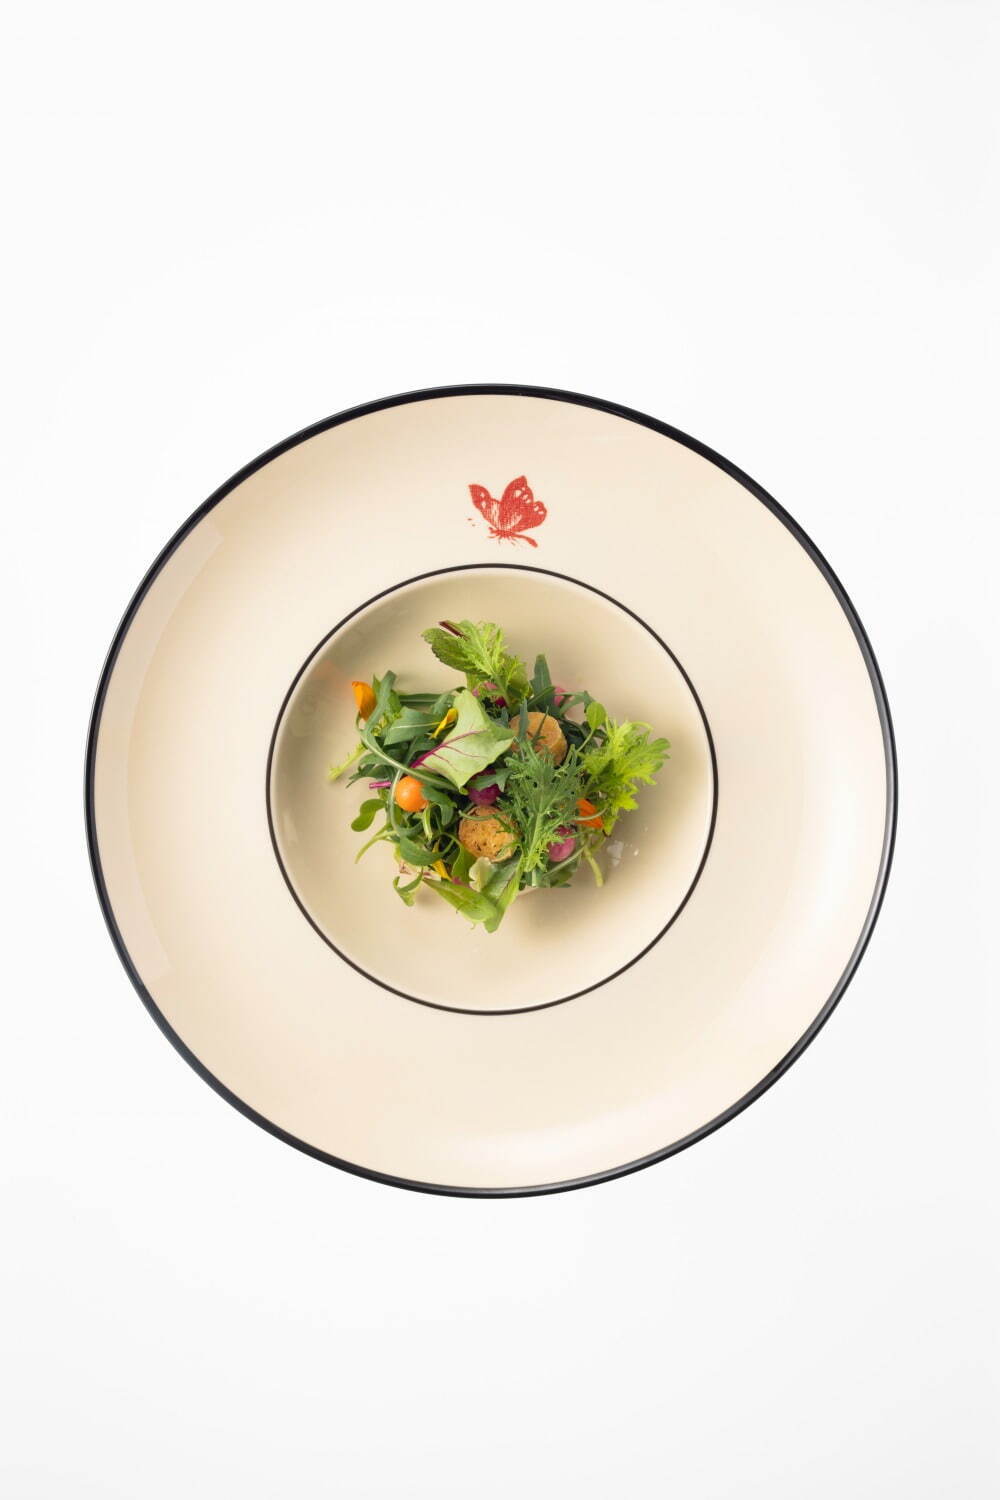 イタリアン ガーデンサラダ、季節野菜のピクルス添え
©Hiroki Kobayashi